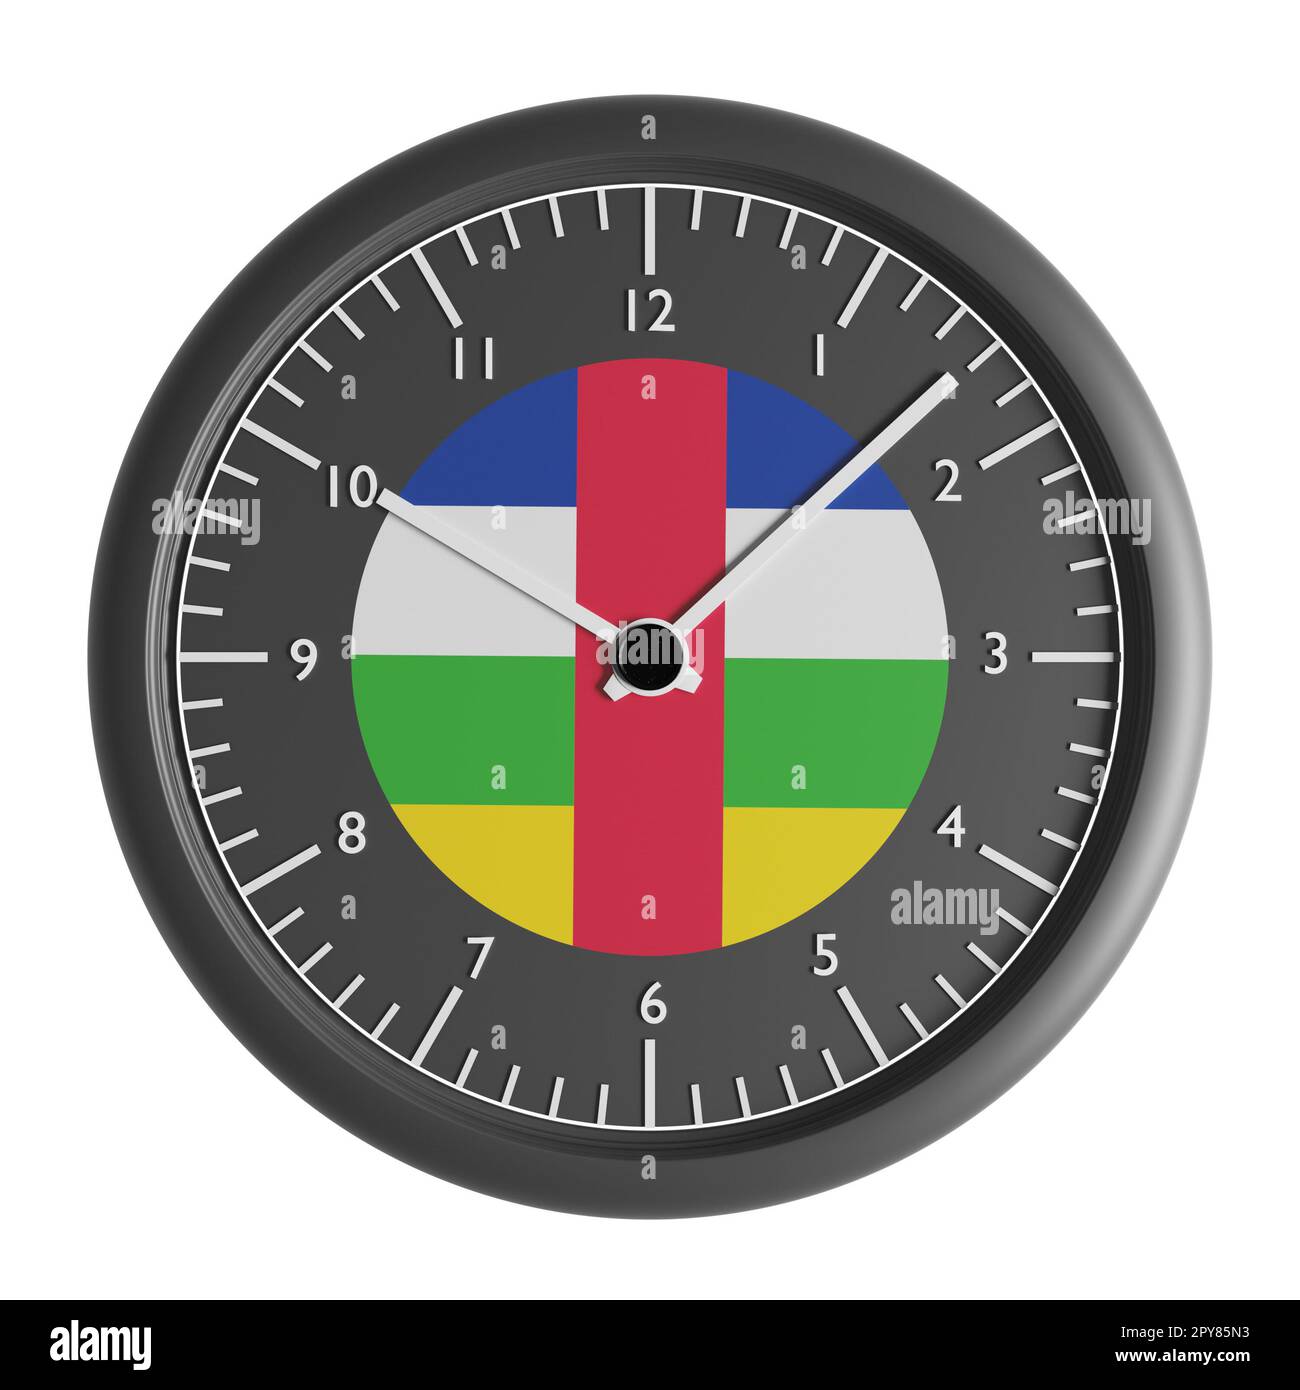 Signes et symboles. Elément de conception. 3D illustration. Horloge murale avec le drapeau de la République centrafricaine Banque D'Images